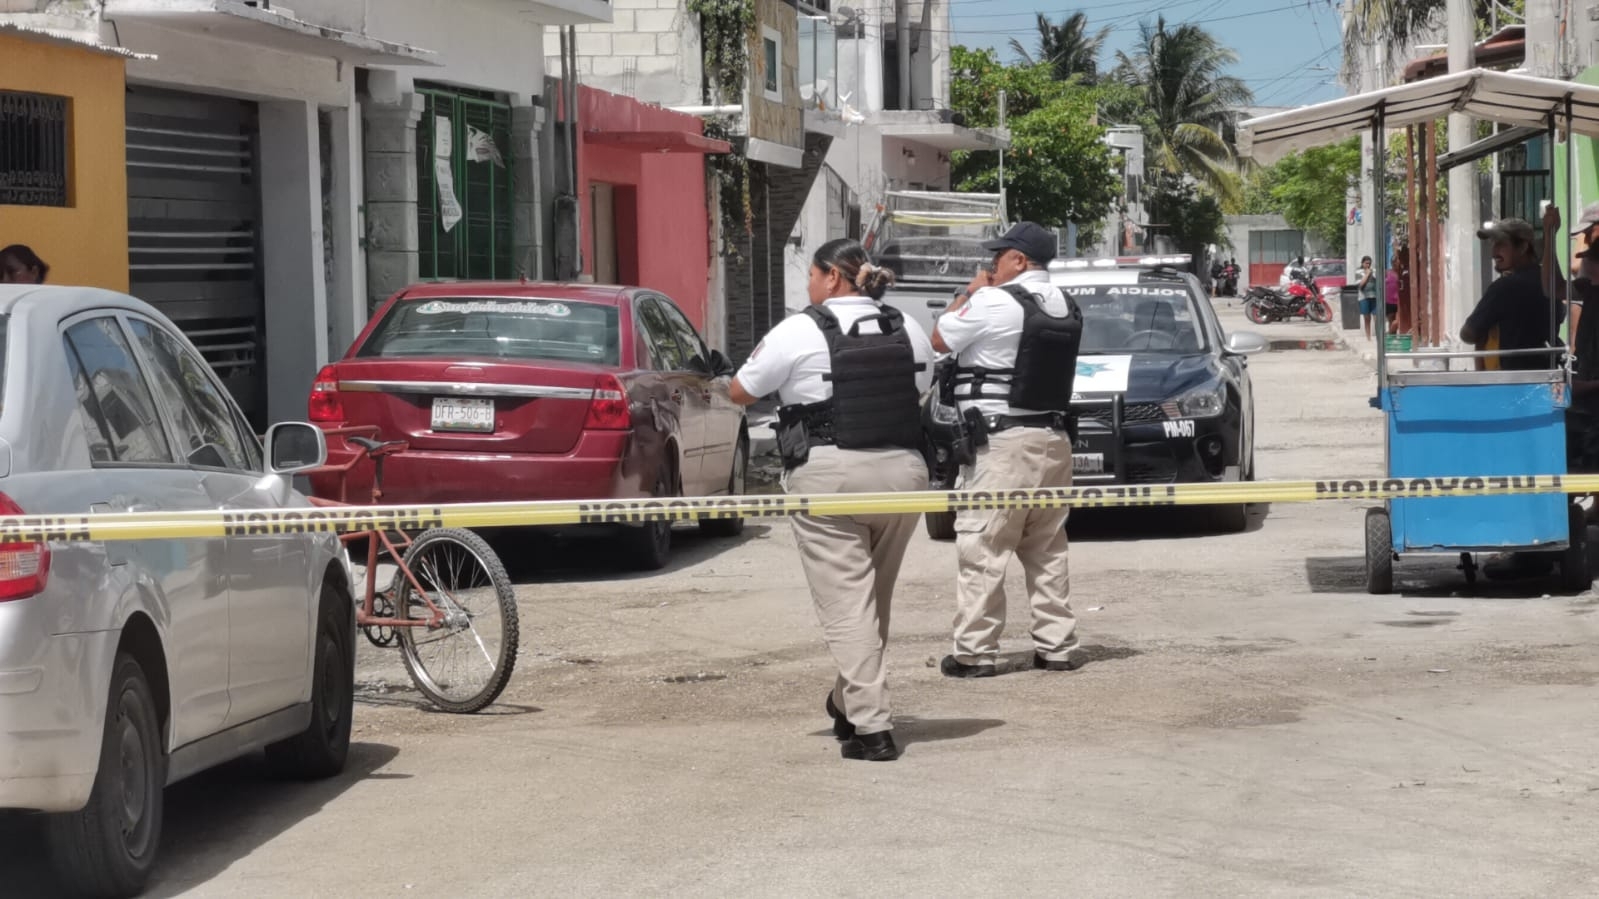 Cuestionan datos del Sistema Nacional de Seguridad por la baja incidencia delictiva en Ciudad del Carmen